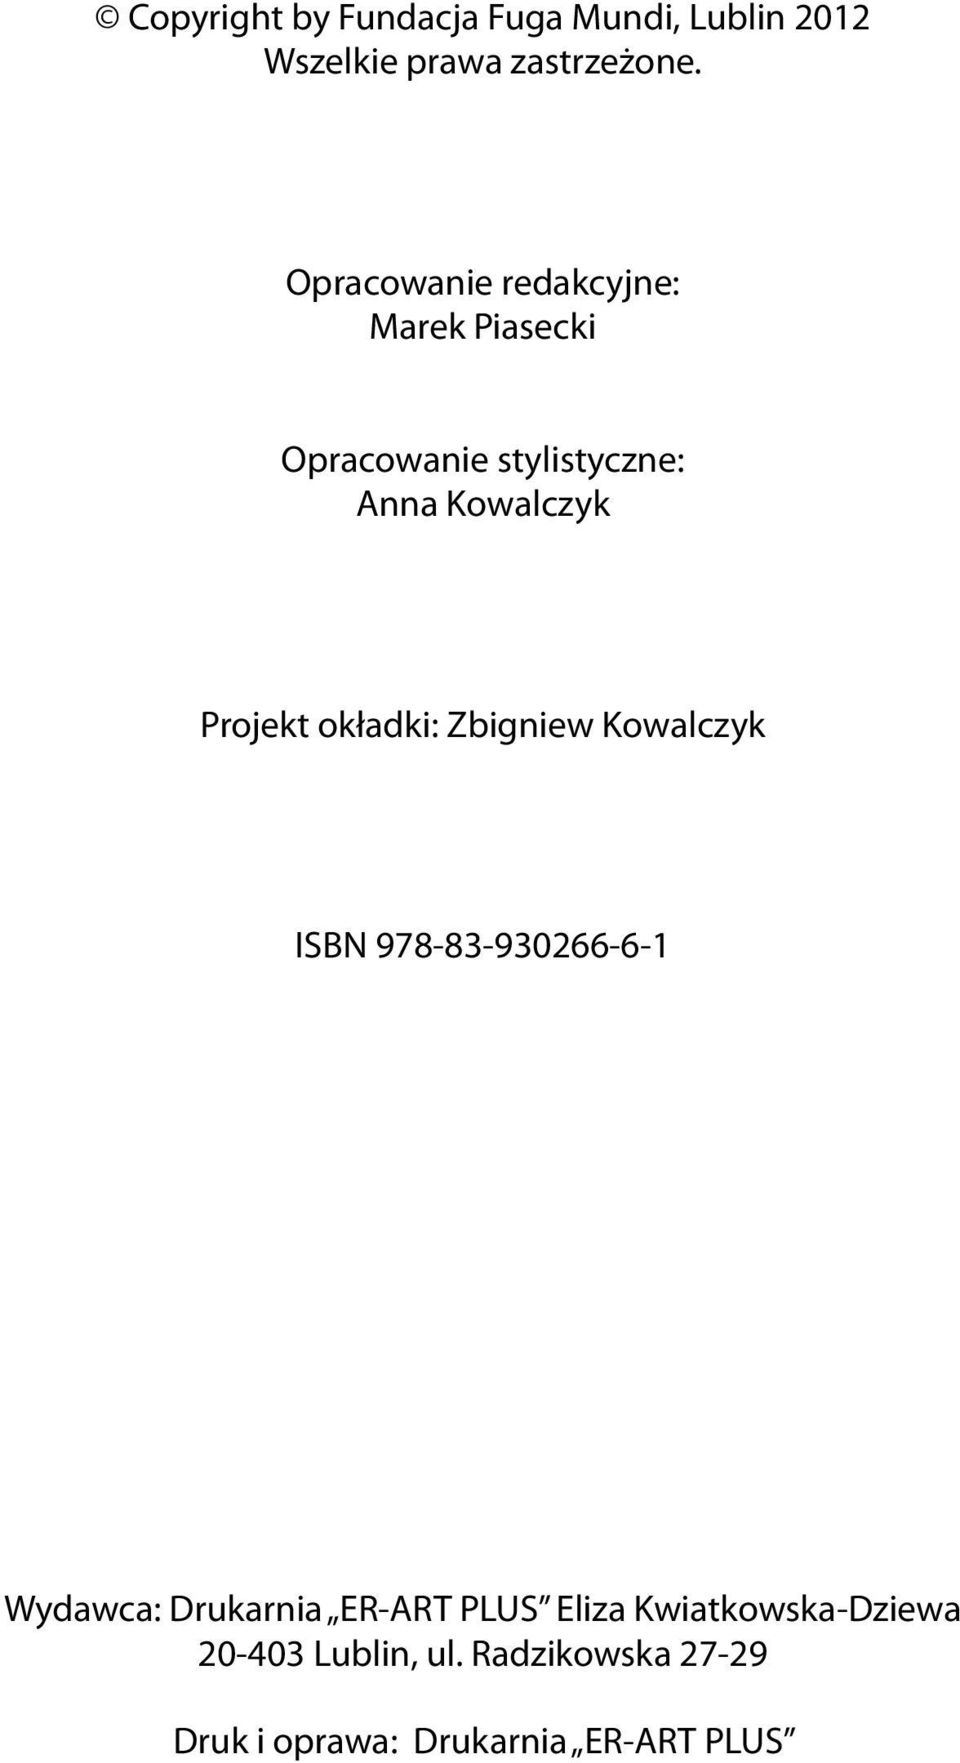 Projekt okładki: Zbigniew Kowalczyk ISBN 978-83-930266-6-1 Wydawca: Drukarnia ER-ART